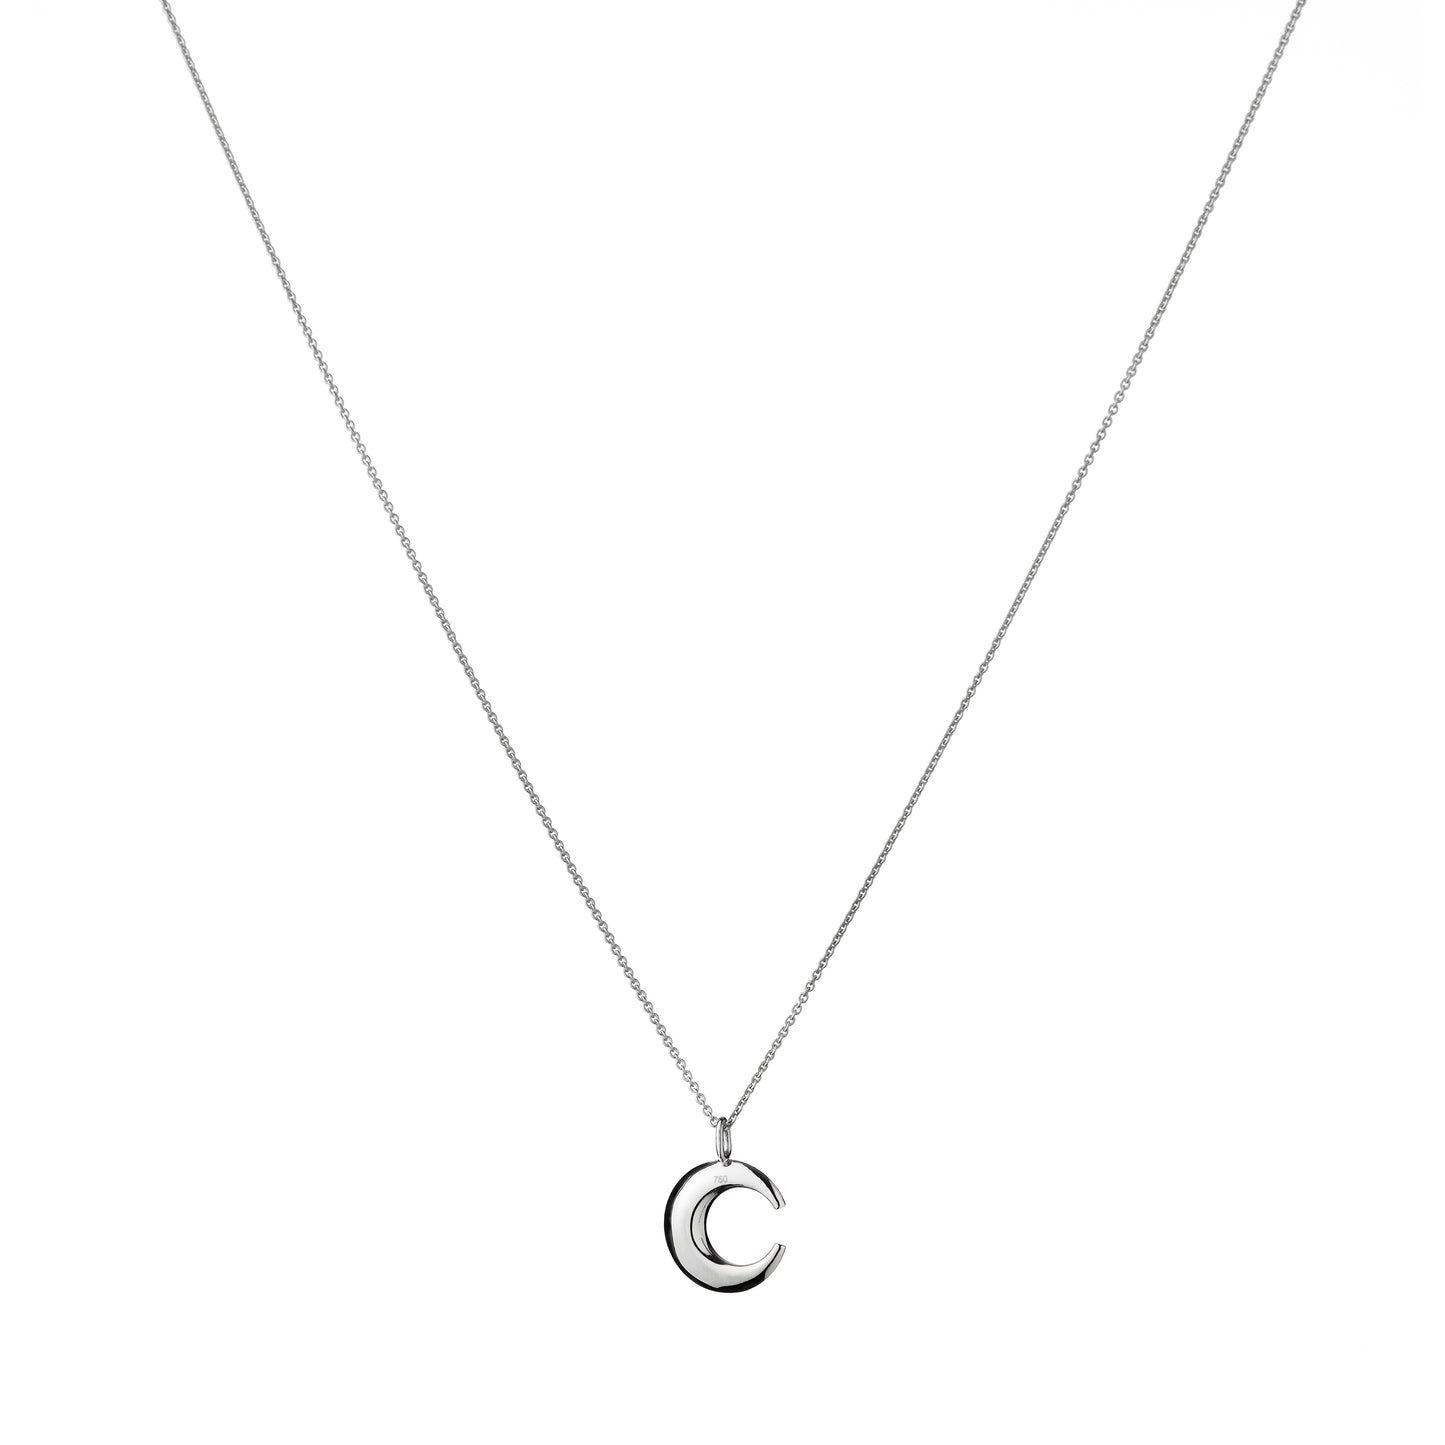 Lunar - Single Diamond Pendant